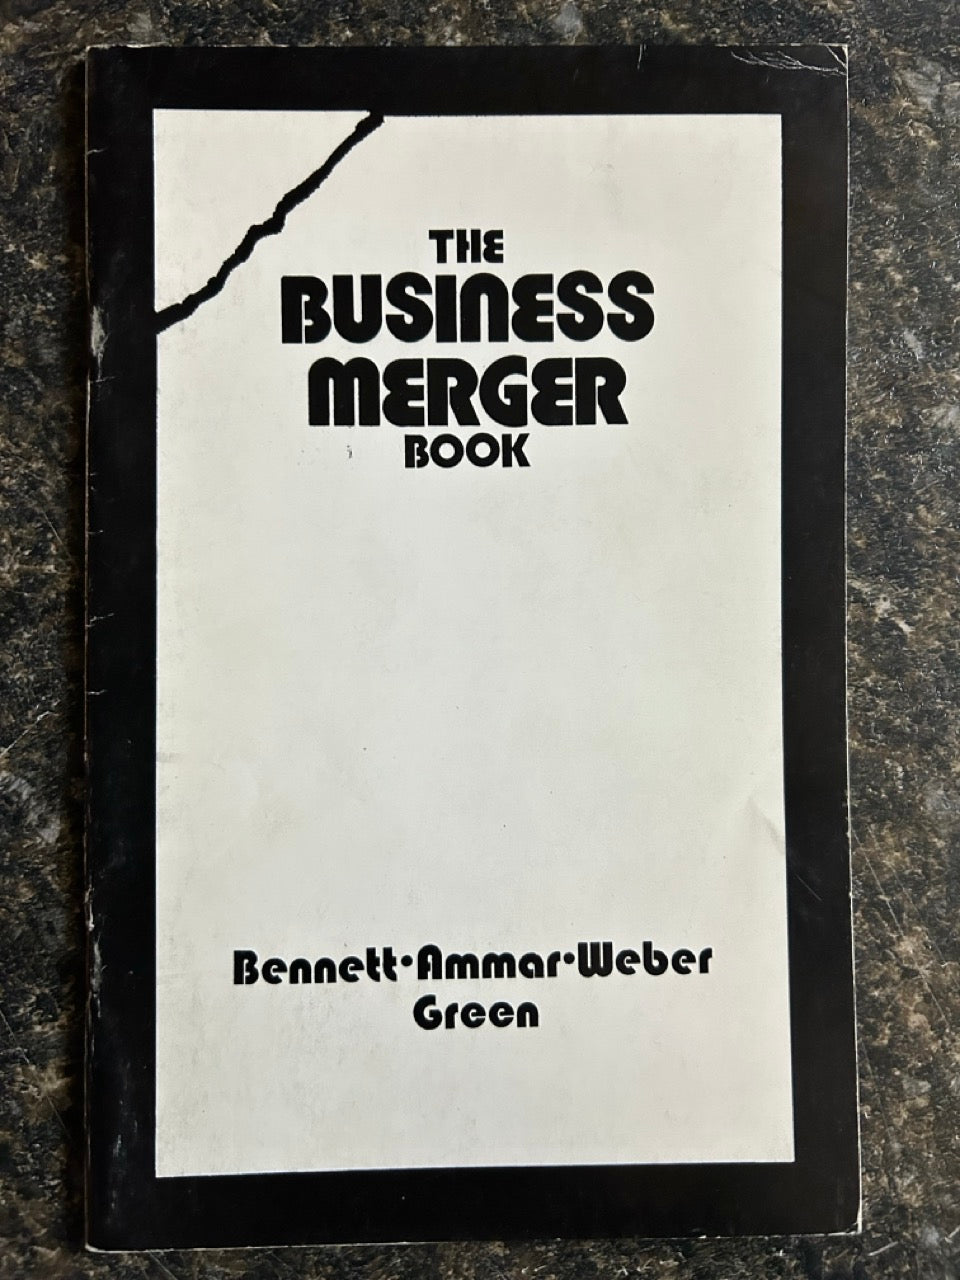 The Business Merger Book - Bennet, Ammar, Weber, Green